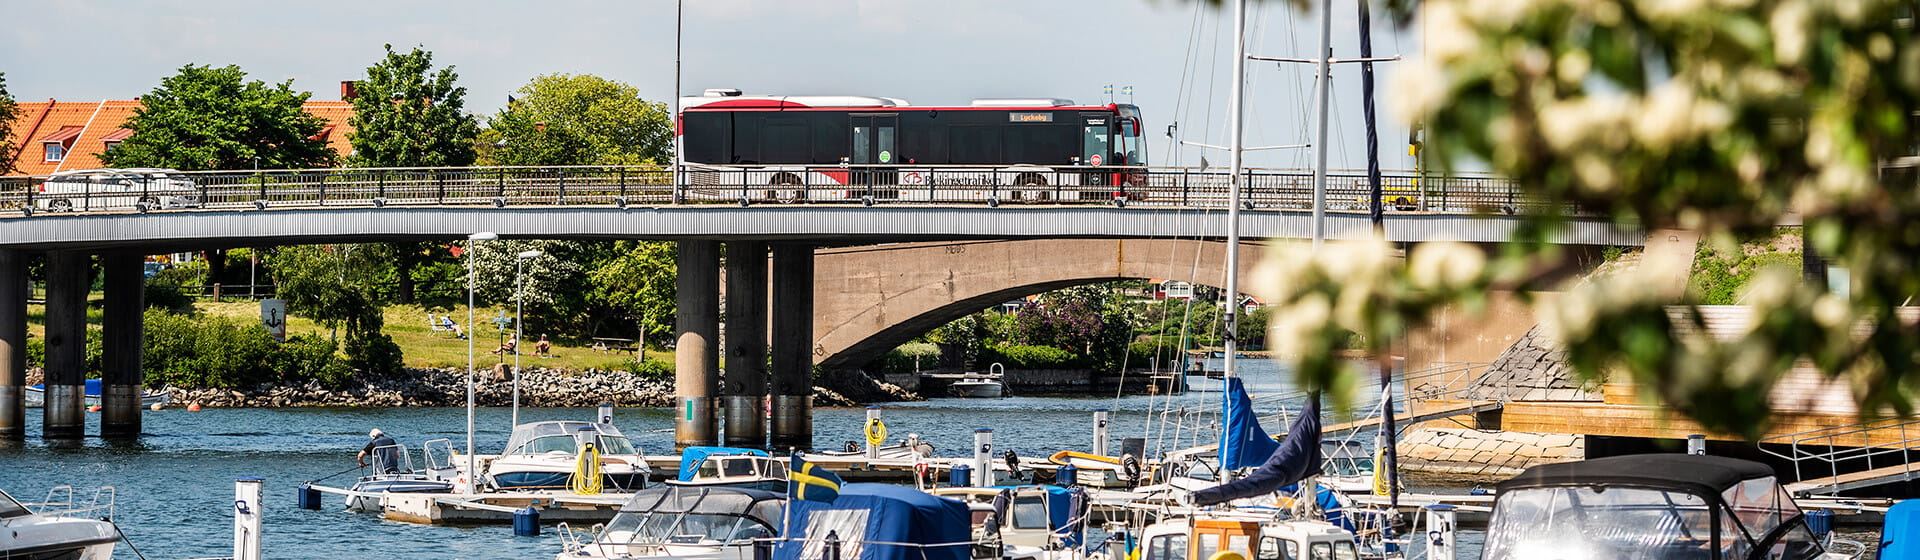 En buss kör över en bro och i förgrunden syns båtar ligga i vattnet.